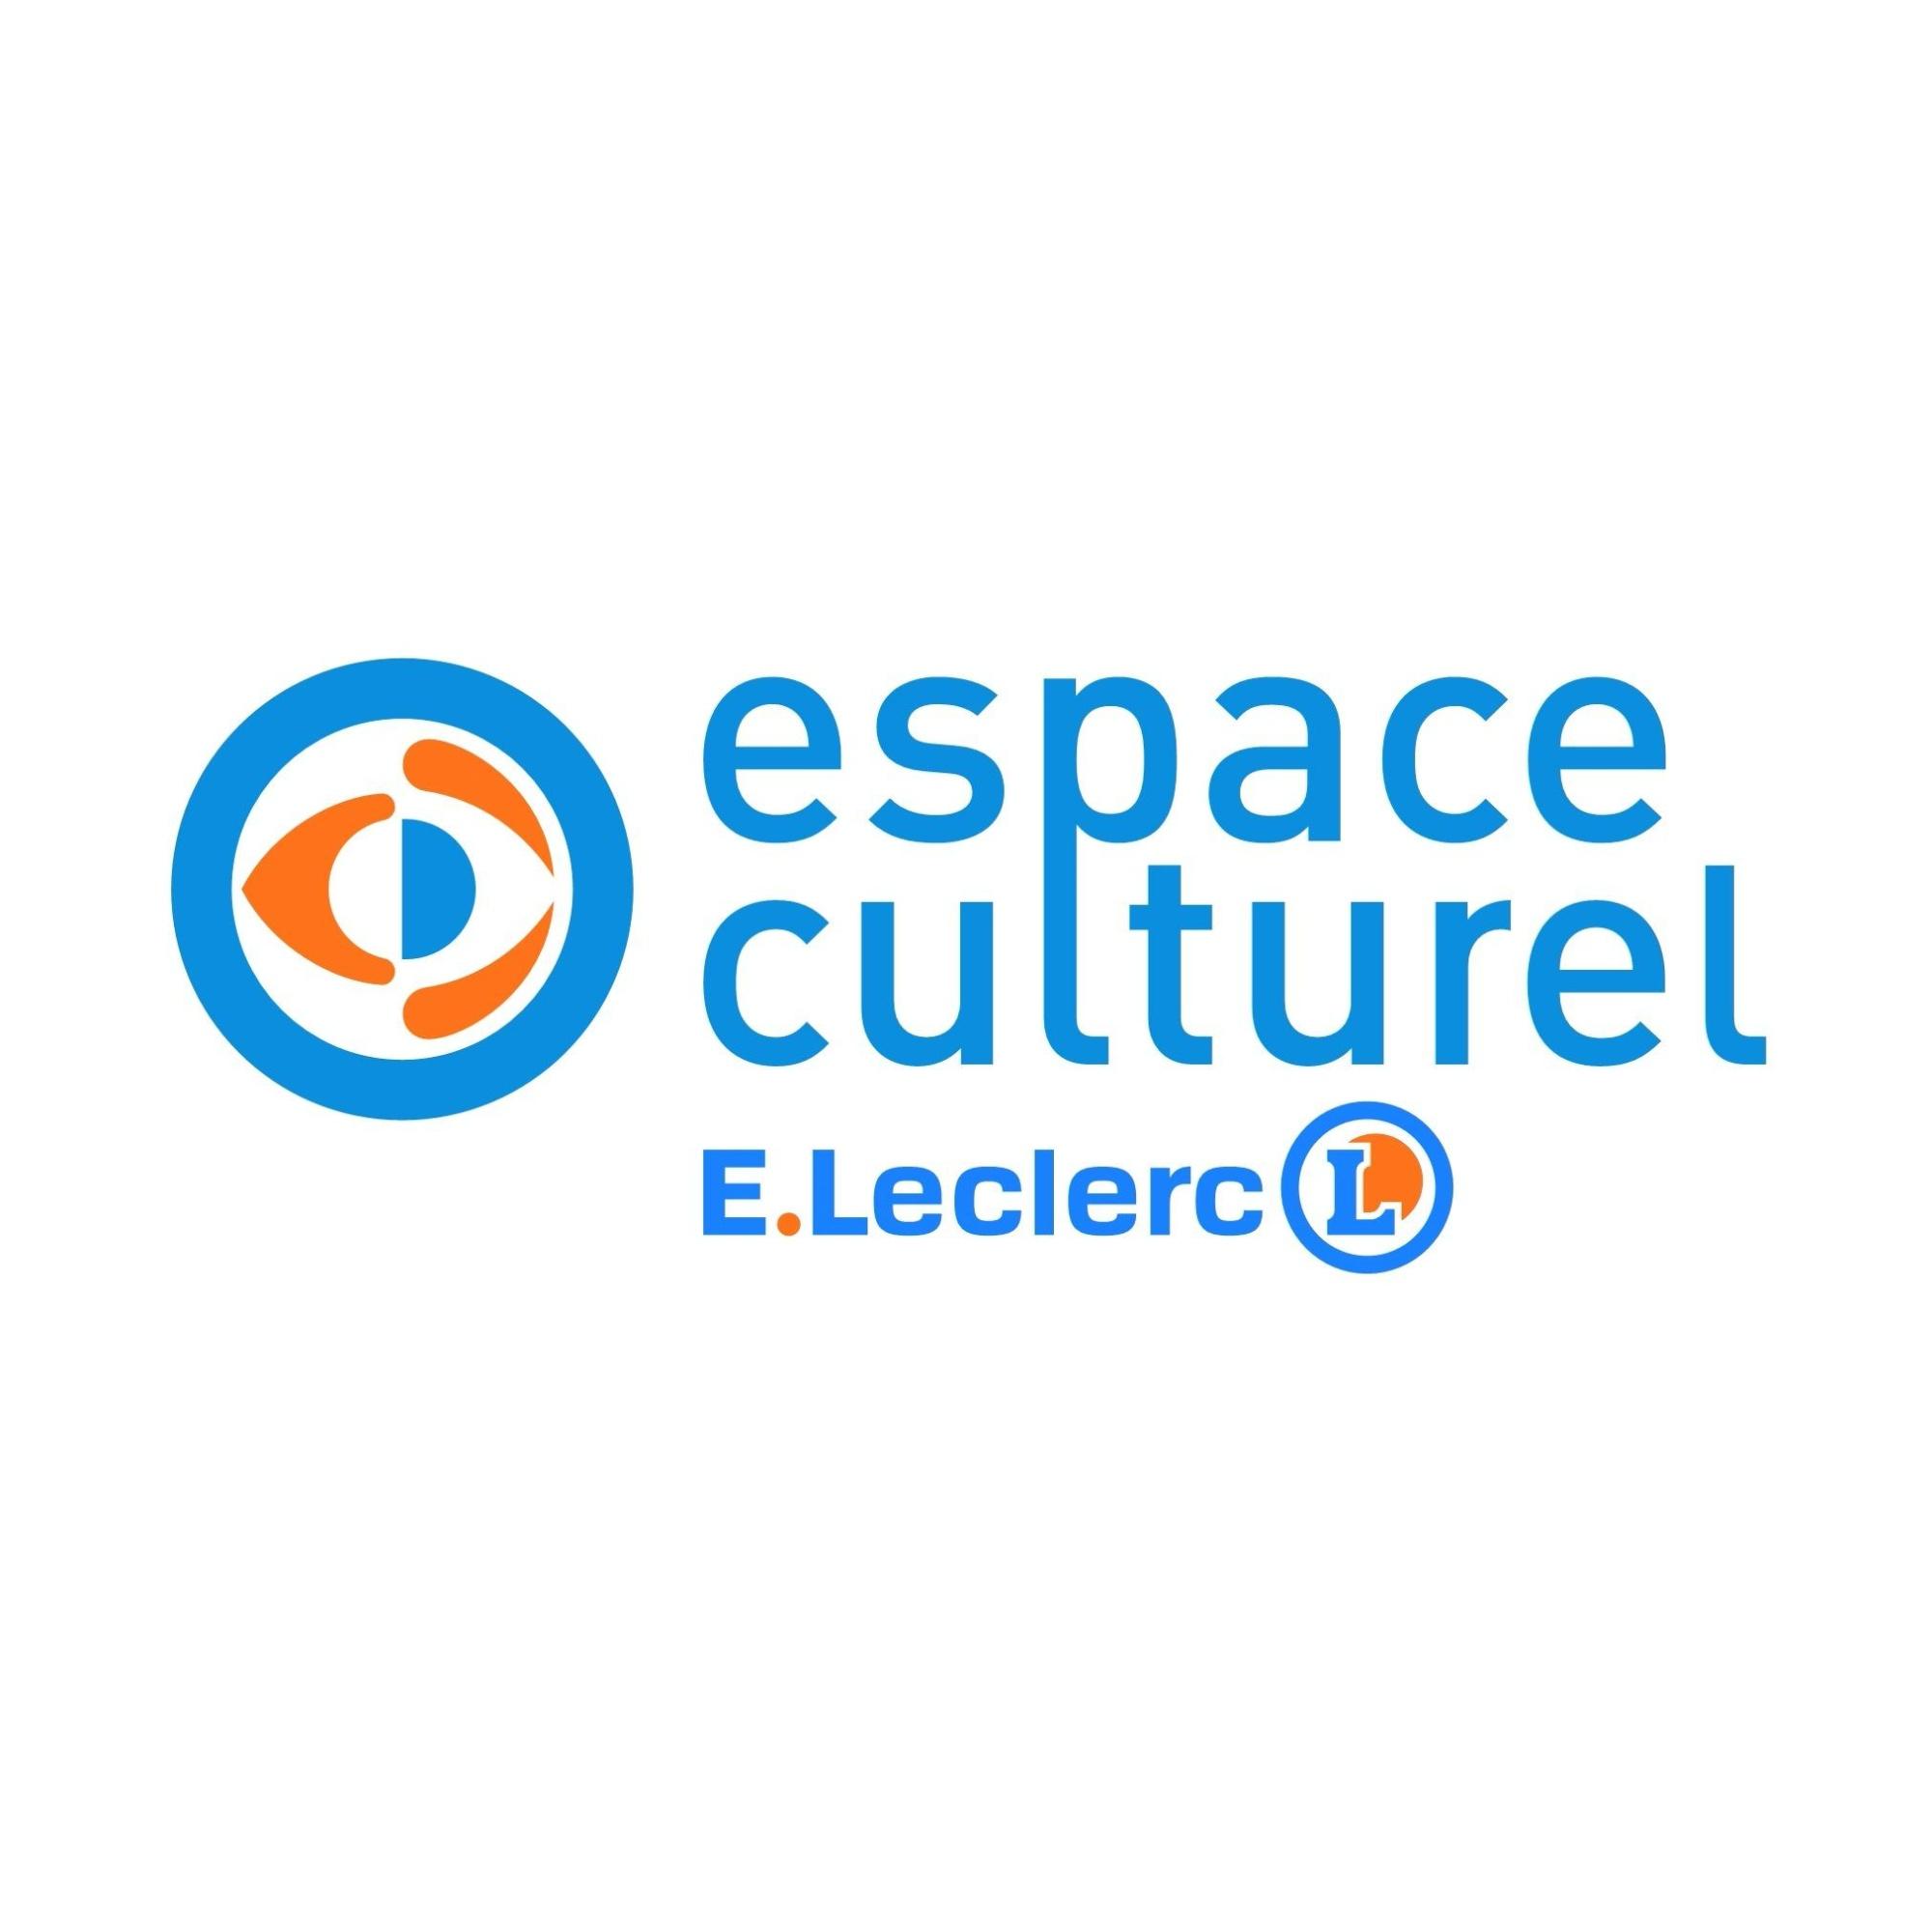 E.leclerc Espace Culturel Montbéliard